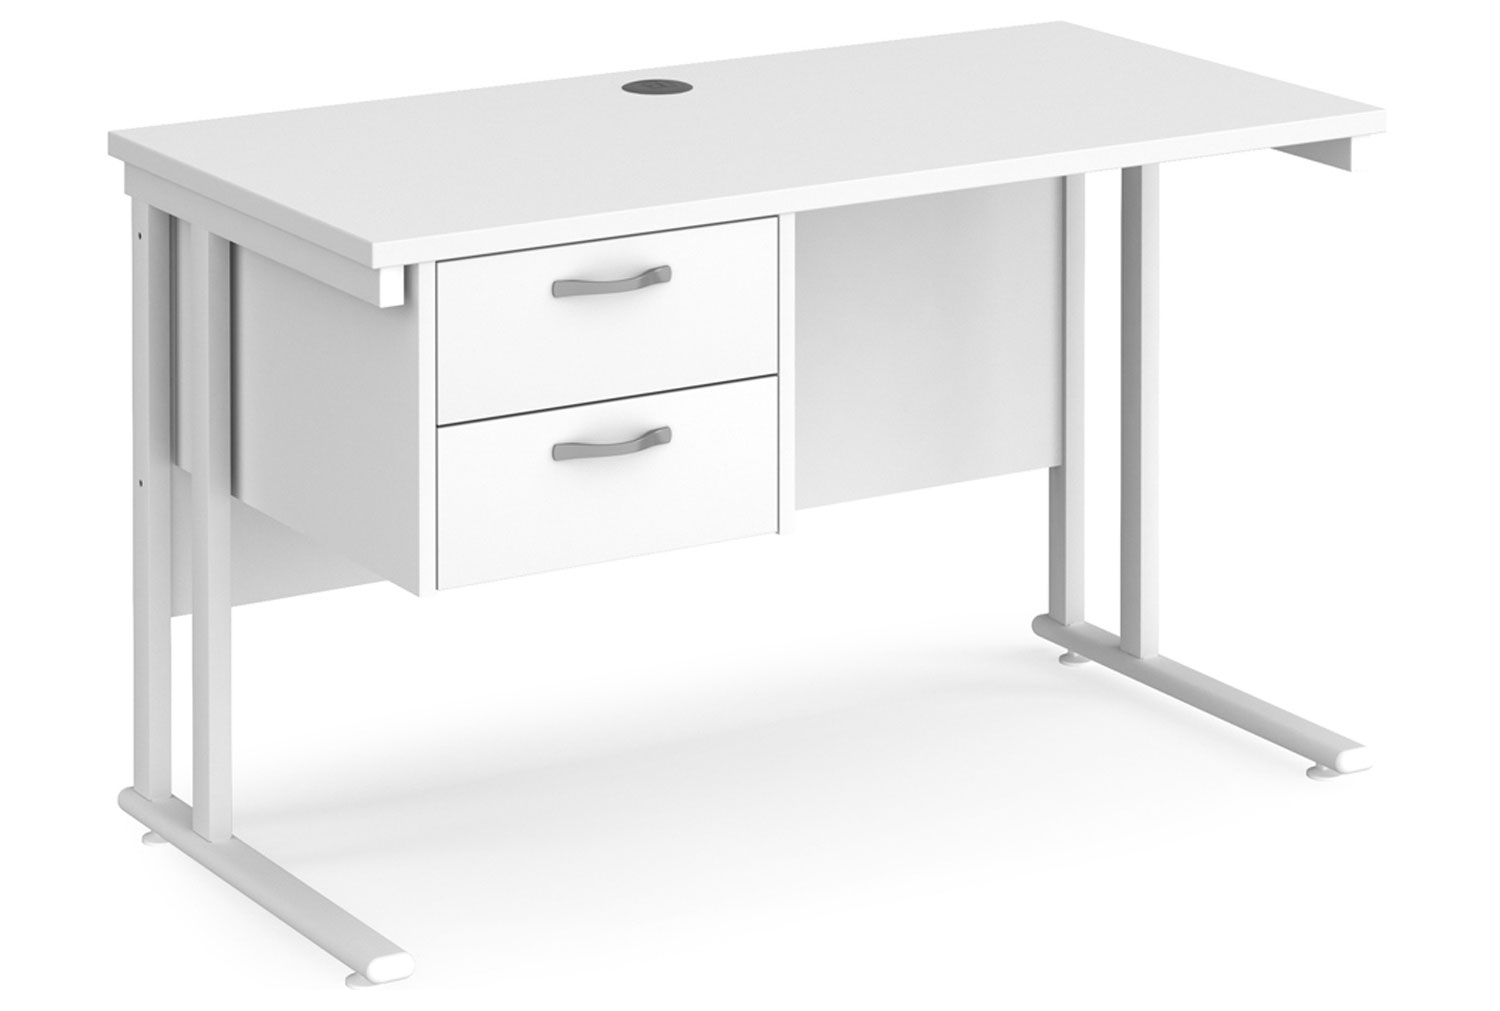 All White Premium C-Leg Narrow Rectangular Office Desk 2 Drawers, 120w60dx73h (cm)